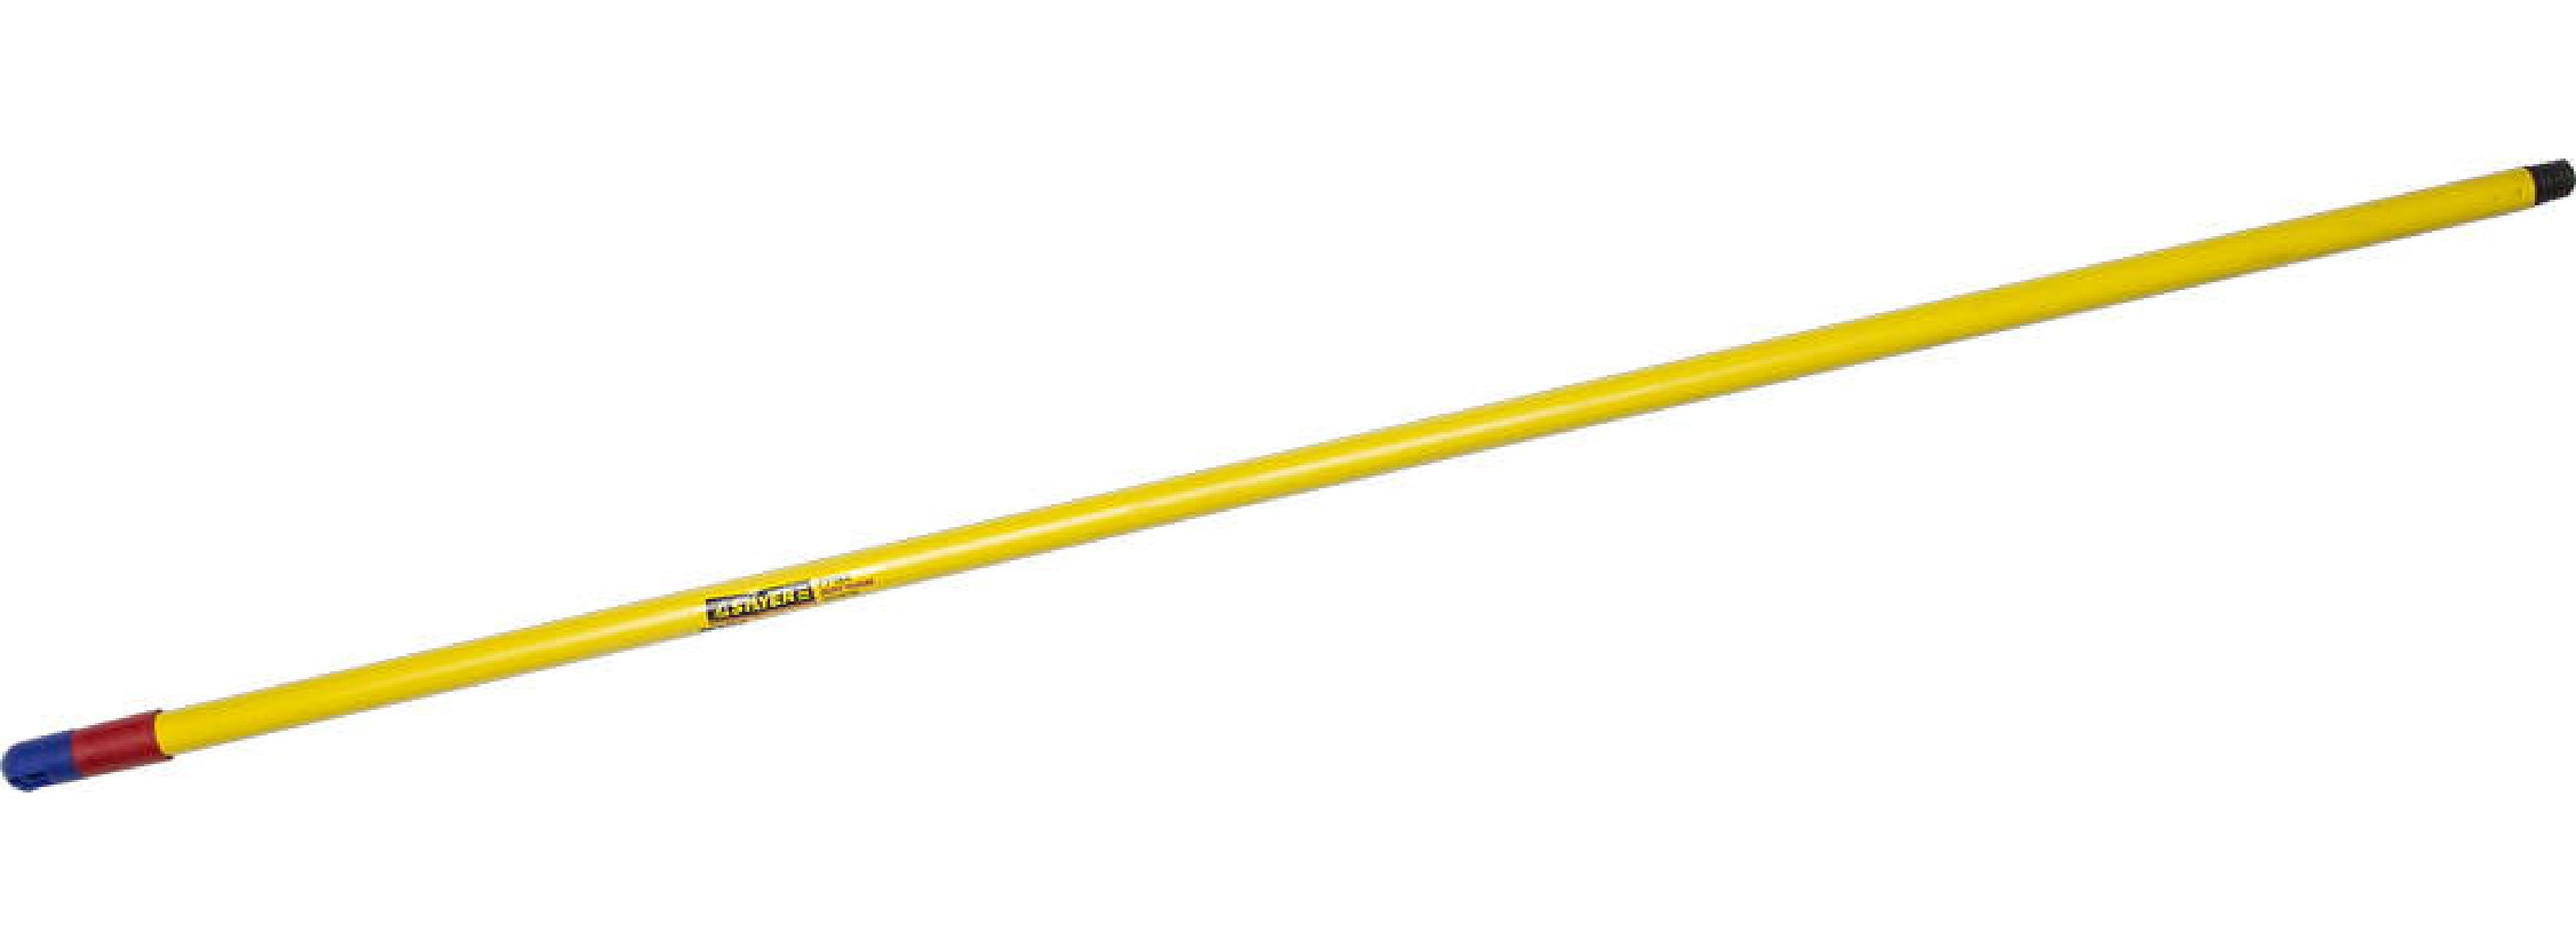 Облегченная ручка STAYER для щеток 130 см с резьбой (2-39133-S)Купить